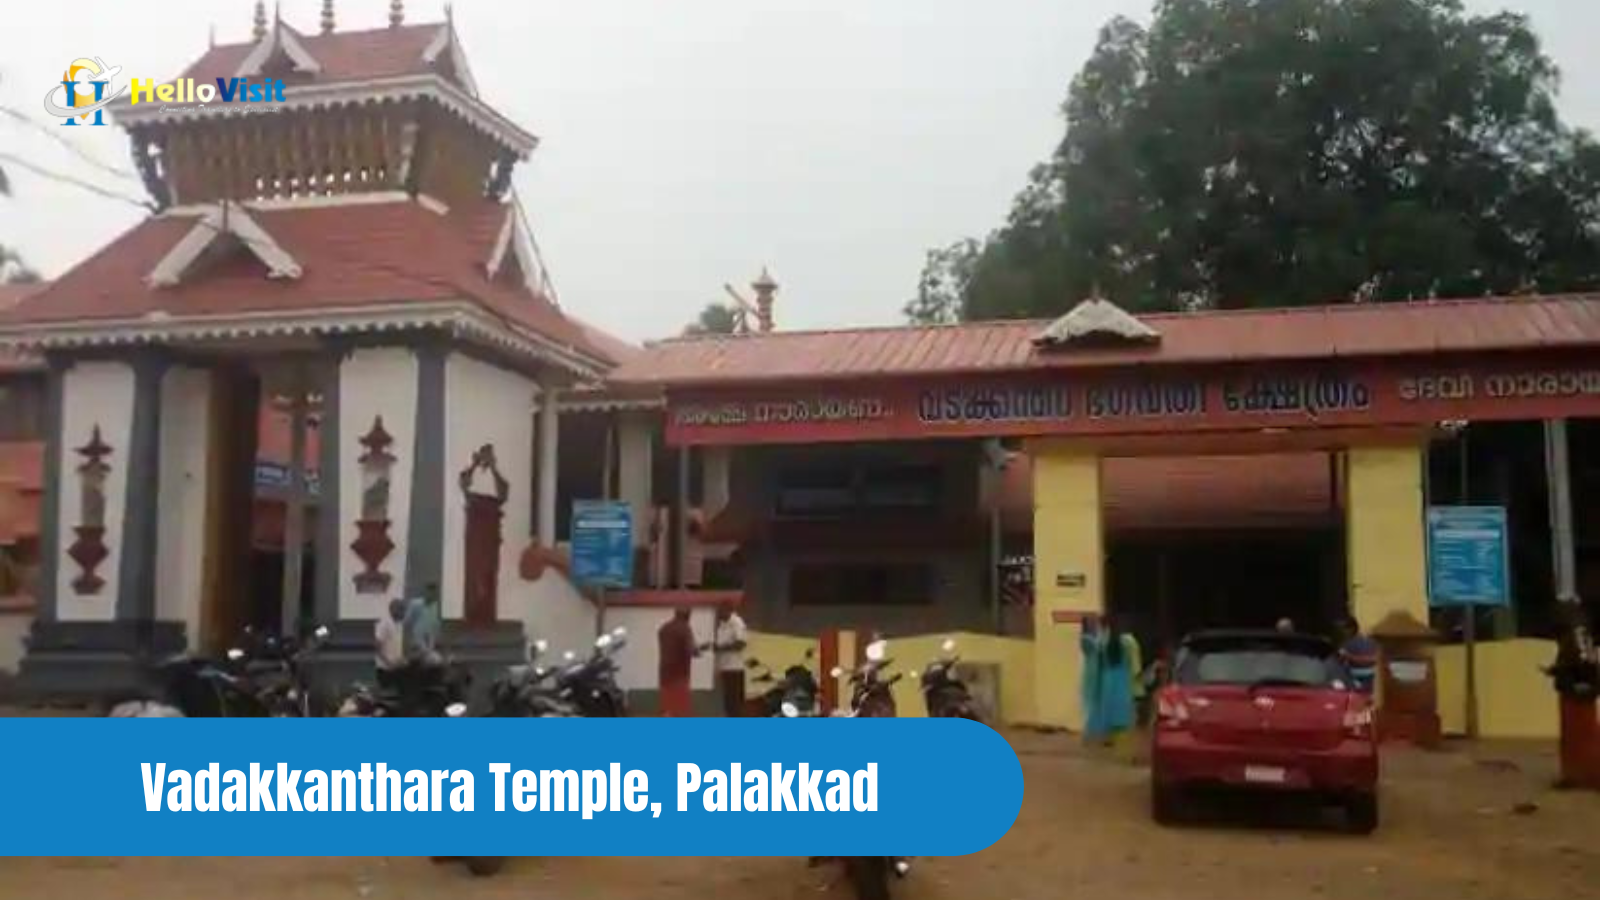 Vadakkanthara Temple, Palakkad